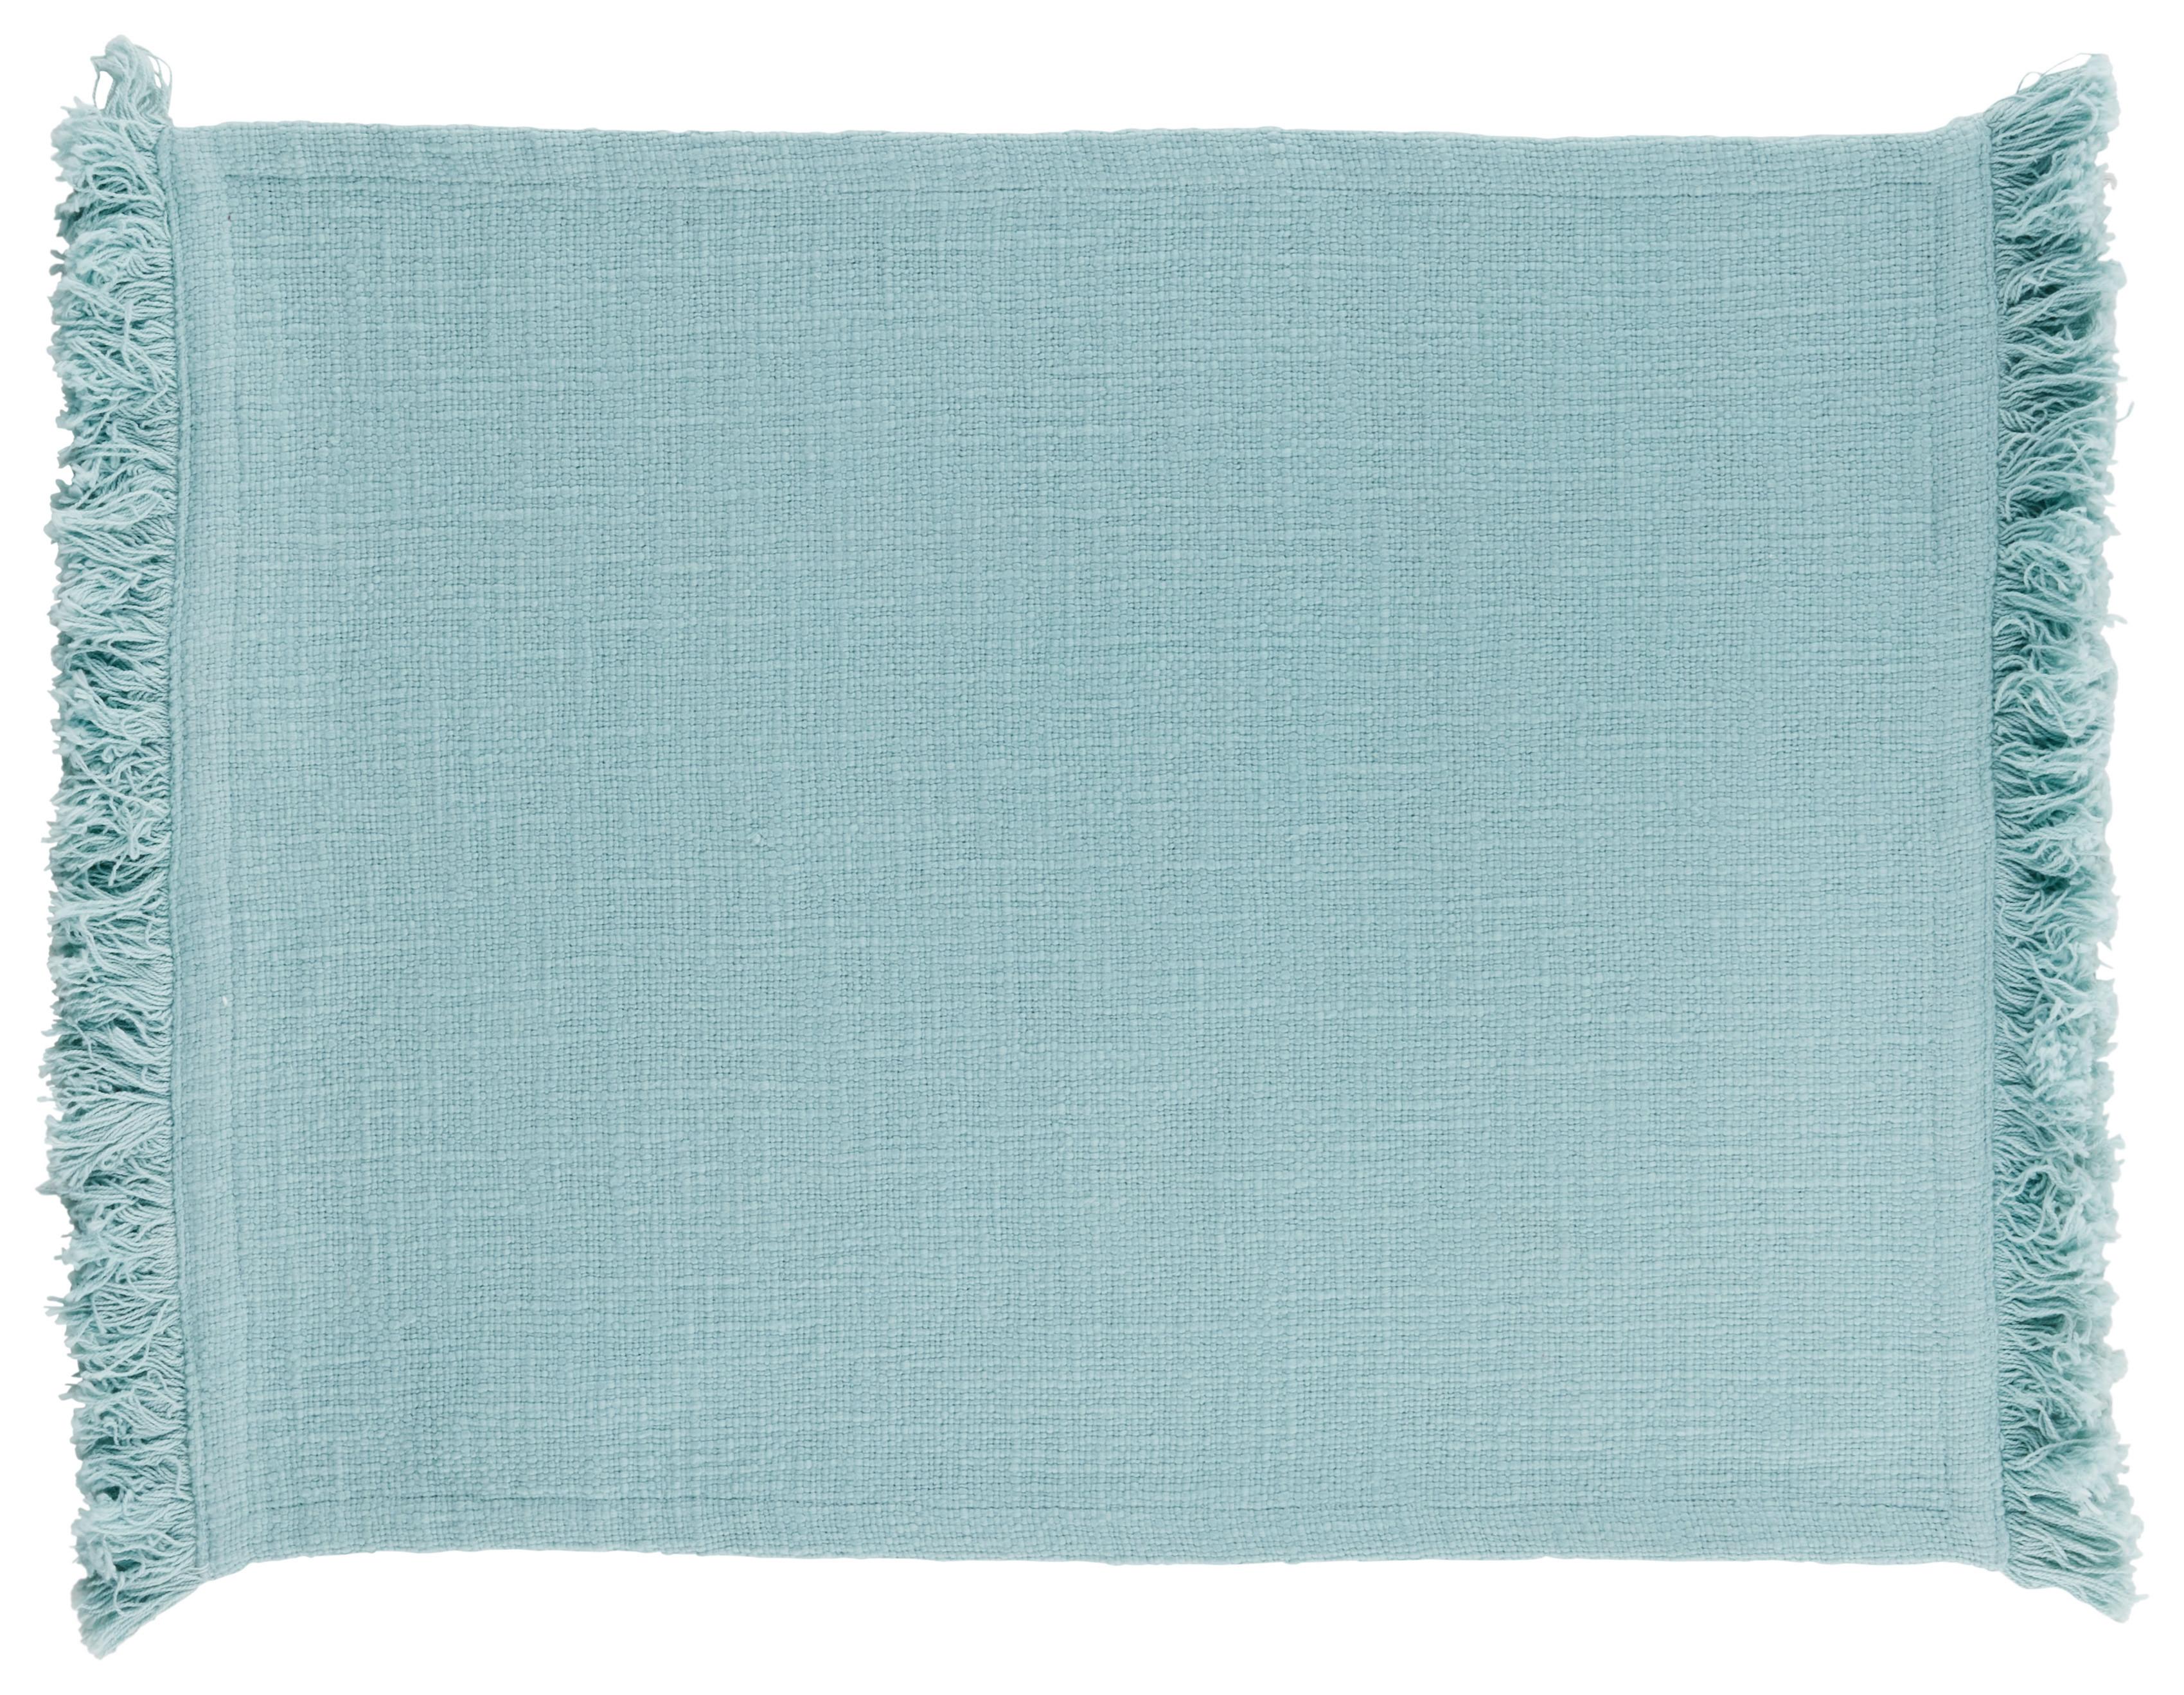 Podmetači Za Stol Pablo - plava, Modern, tekstil (35/45cm) - Premium Living